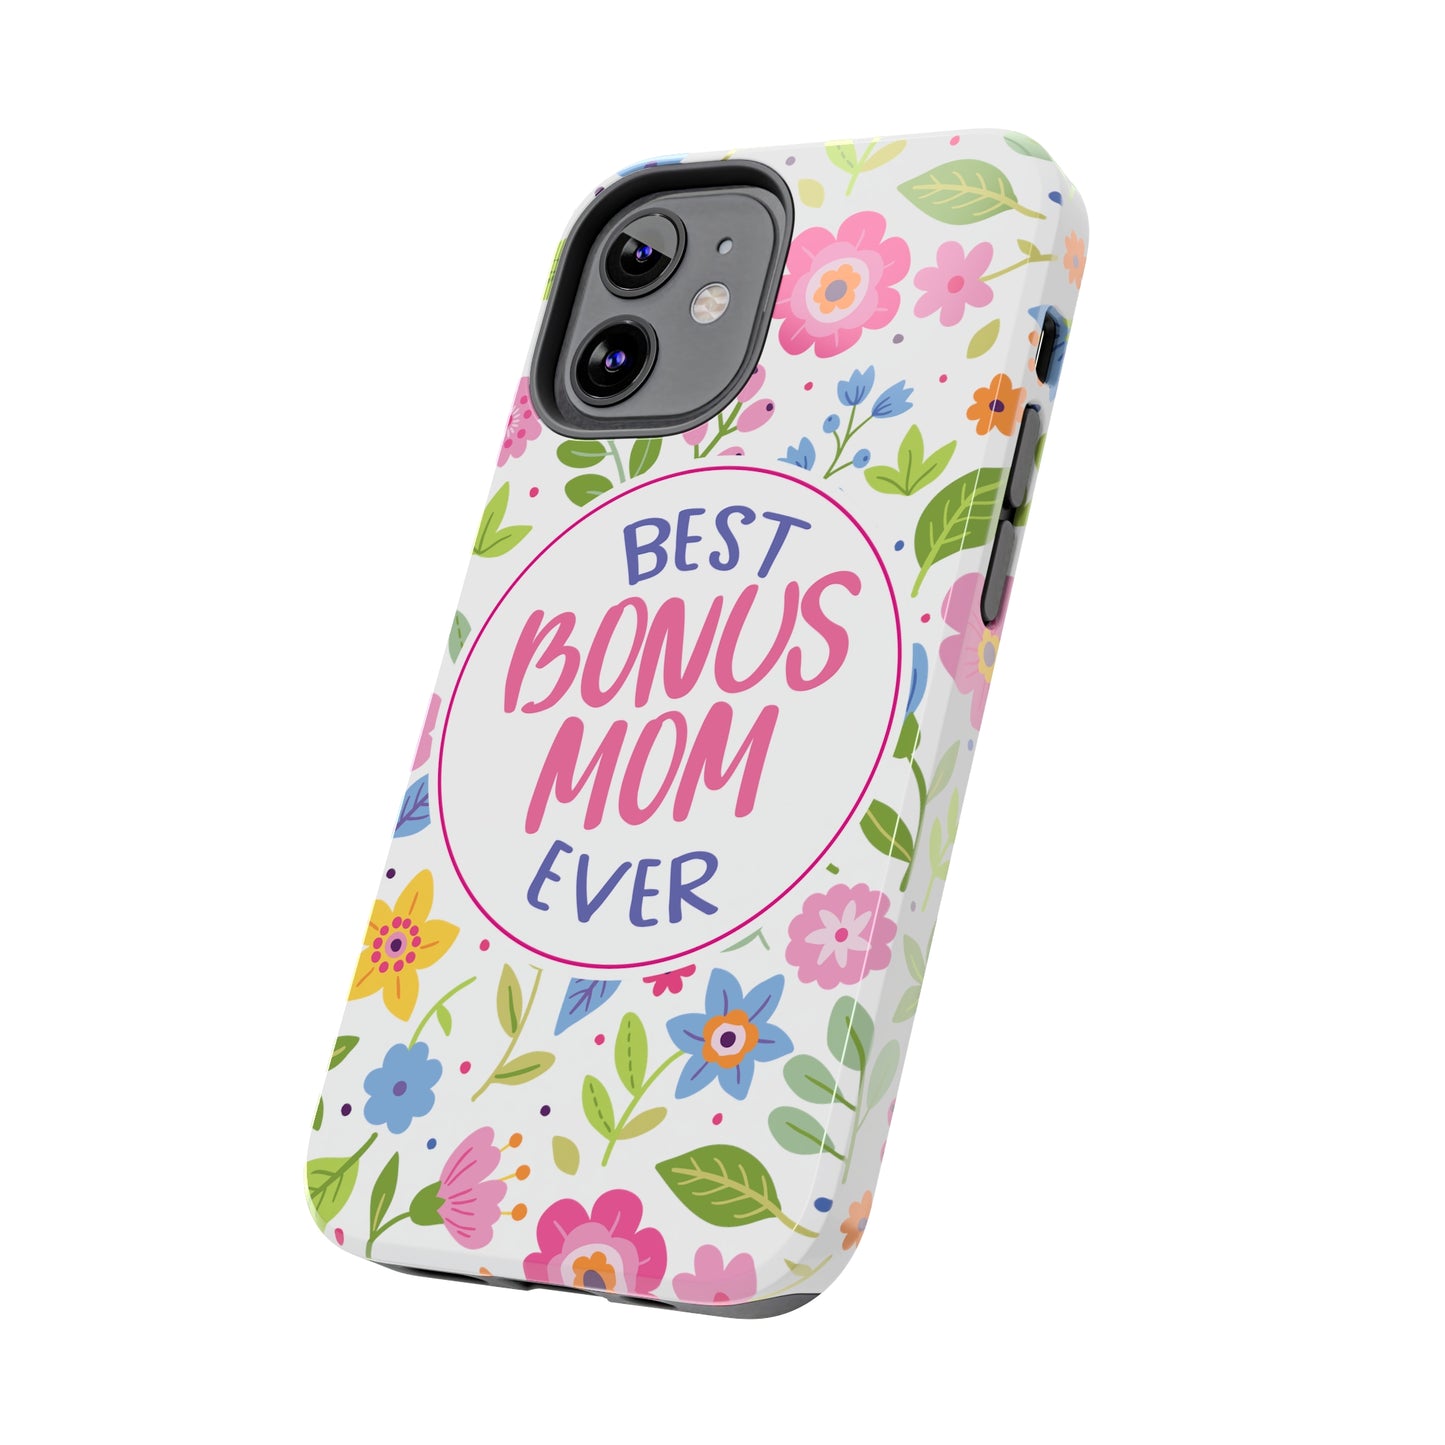 Best Bonus Mom Ever Tough Phone Cases, Case-Mate